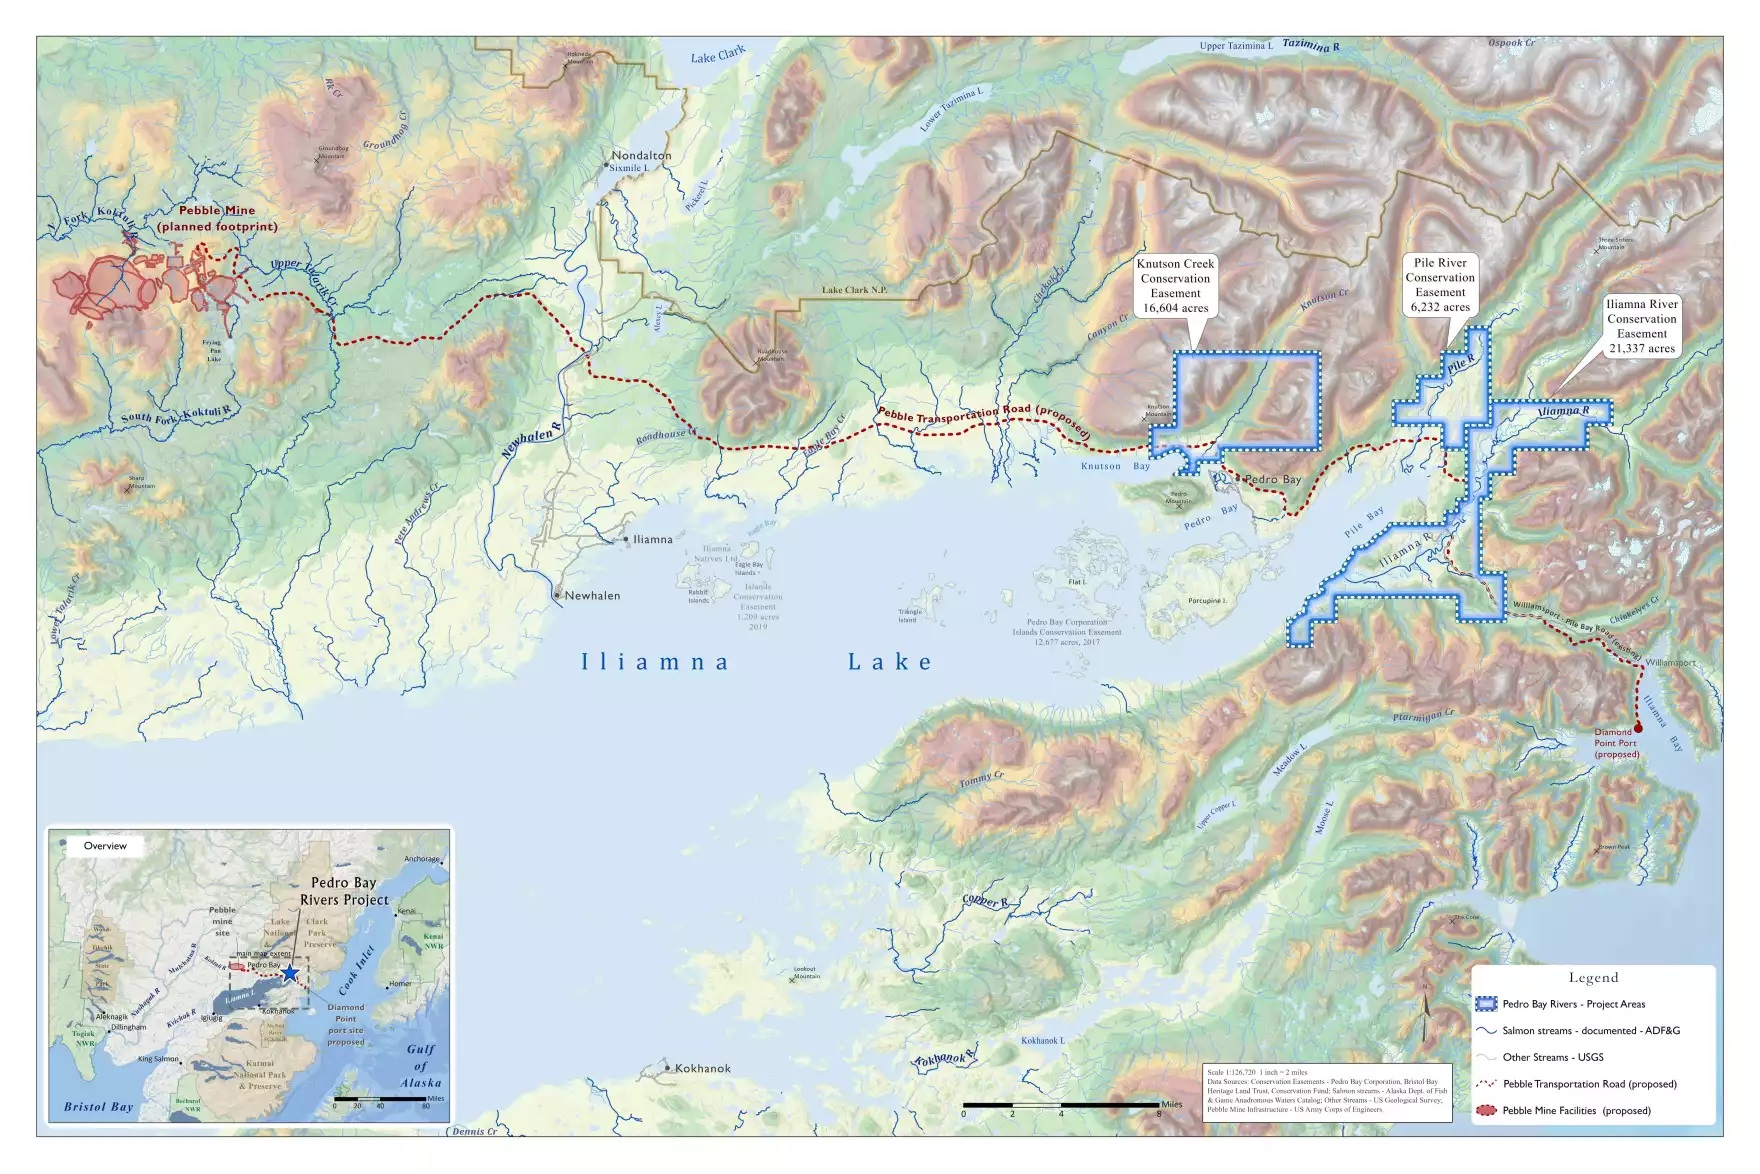 a map near Pedro Bay